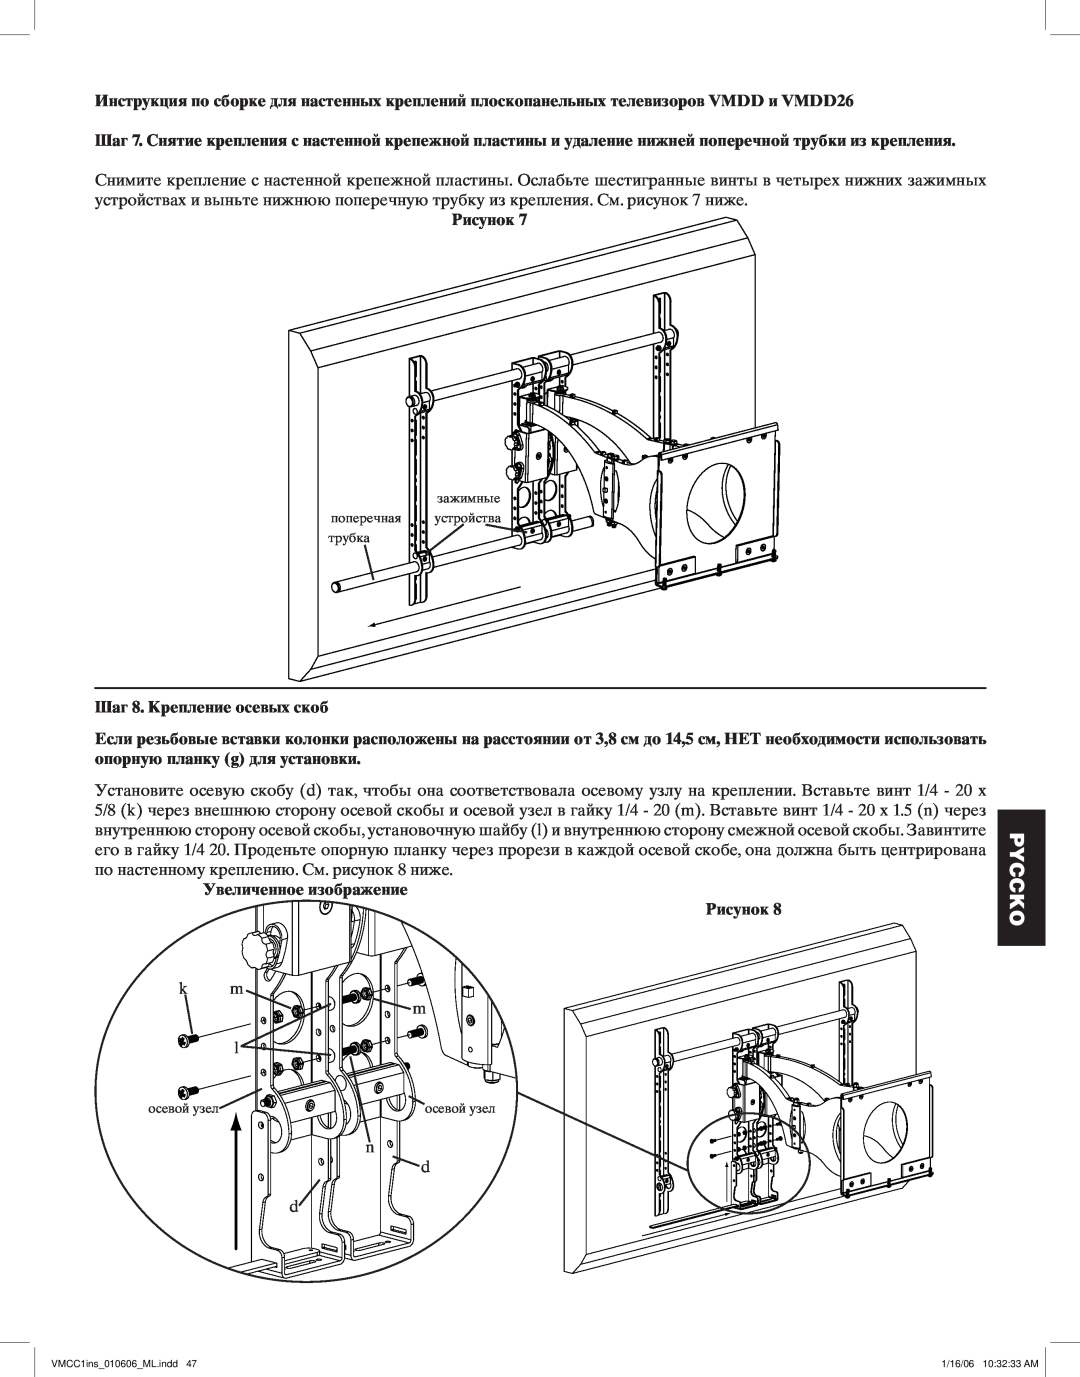 Sanus Systems VMCC1 manual Шаг 8. Крепление осевых скоб, Увеличенное изображение Рисунок, Pyccko, осевой узел 